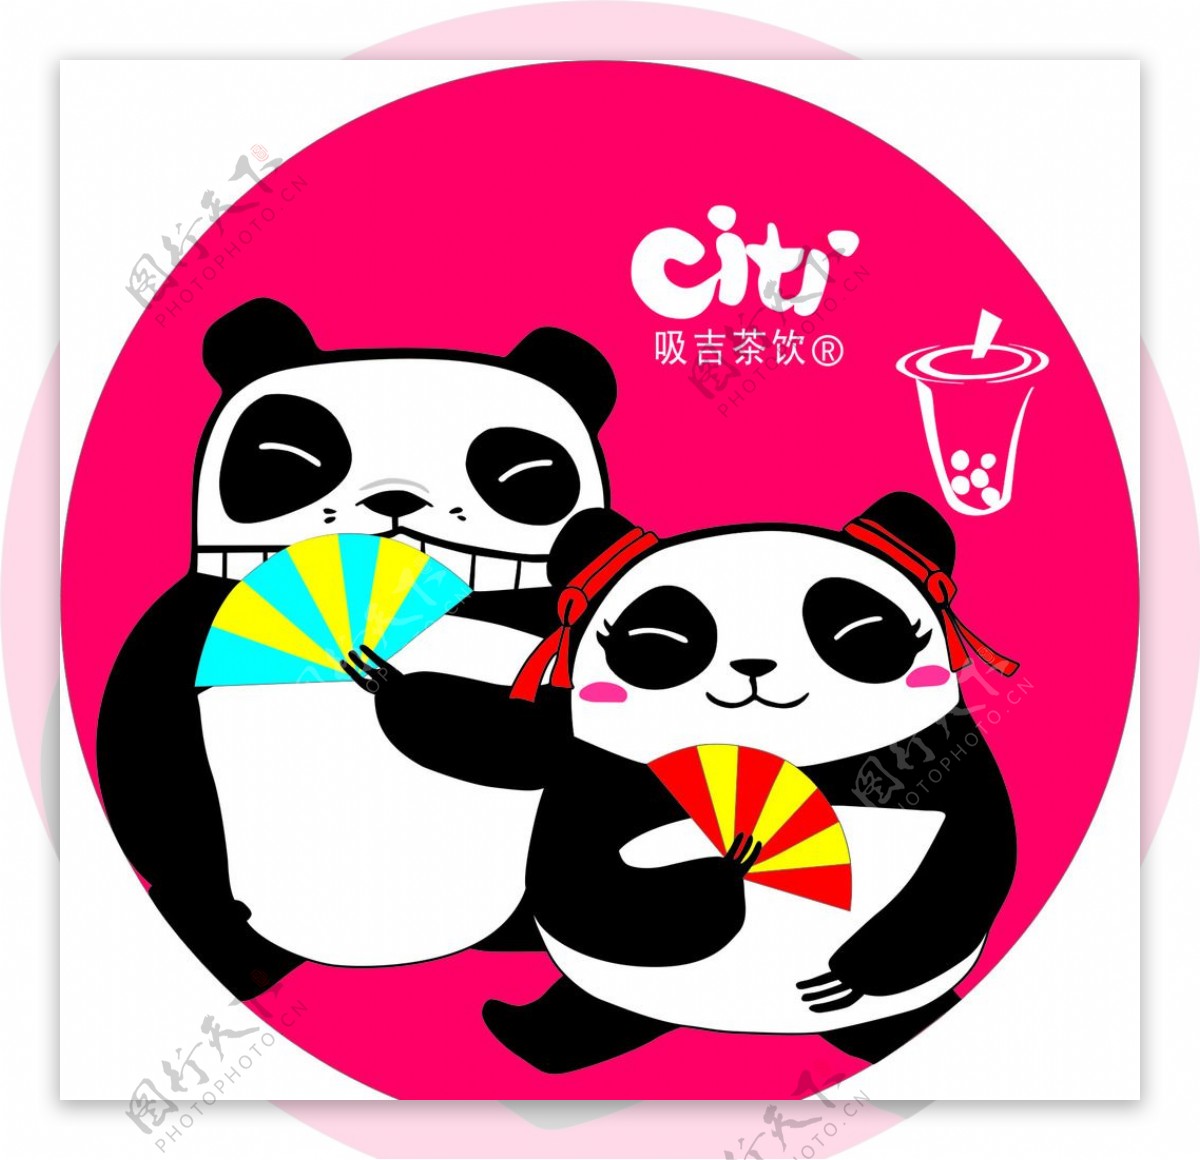 熊猫吸吉茶饮logo图片